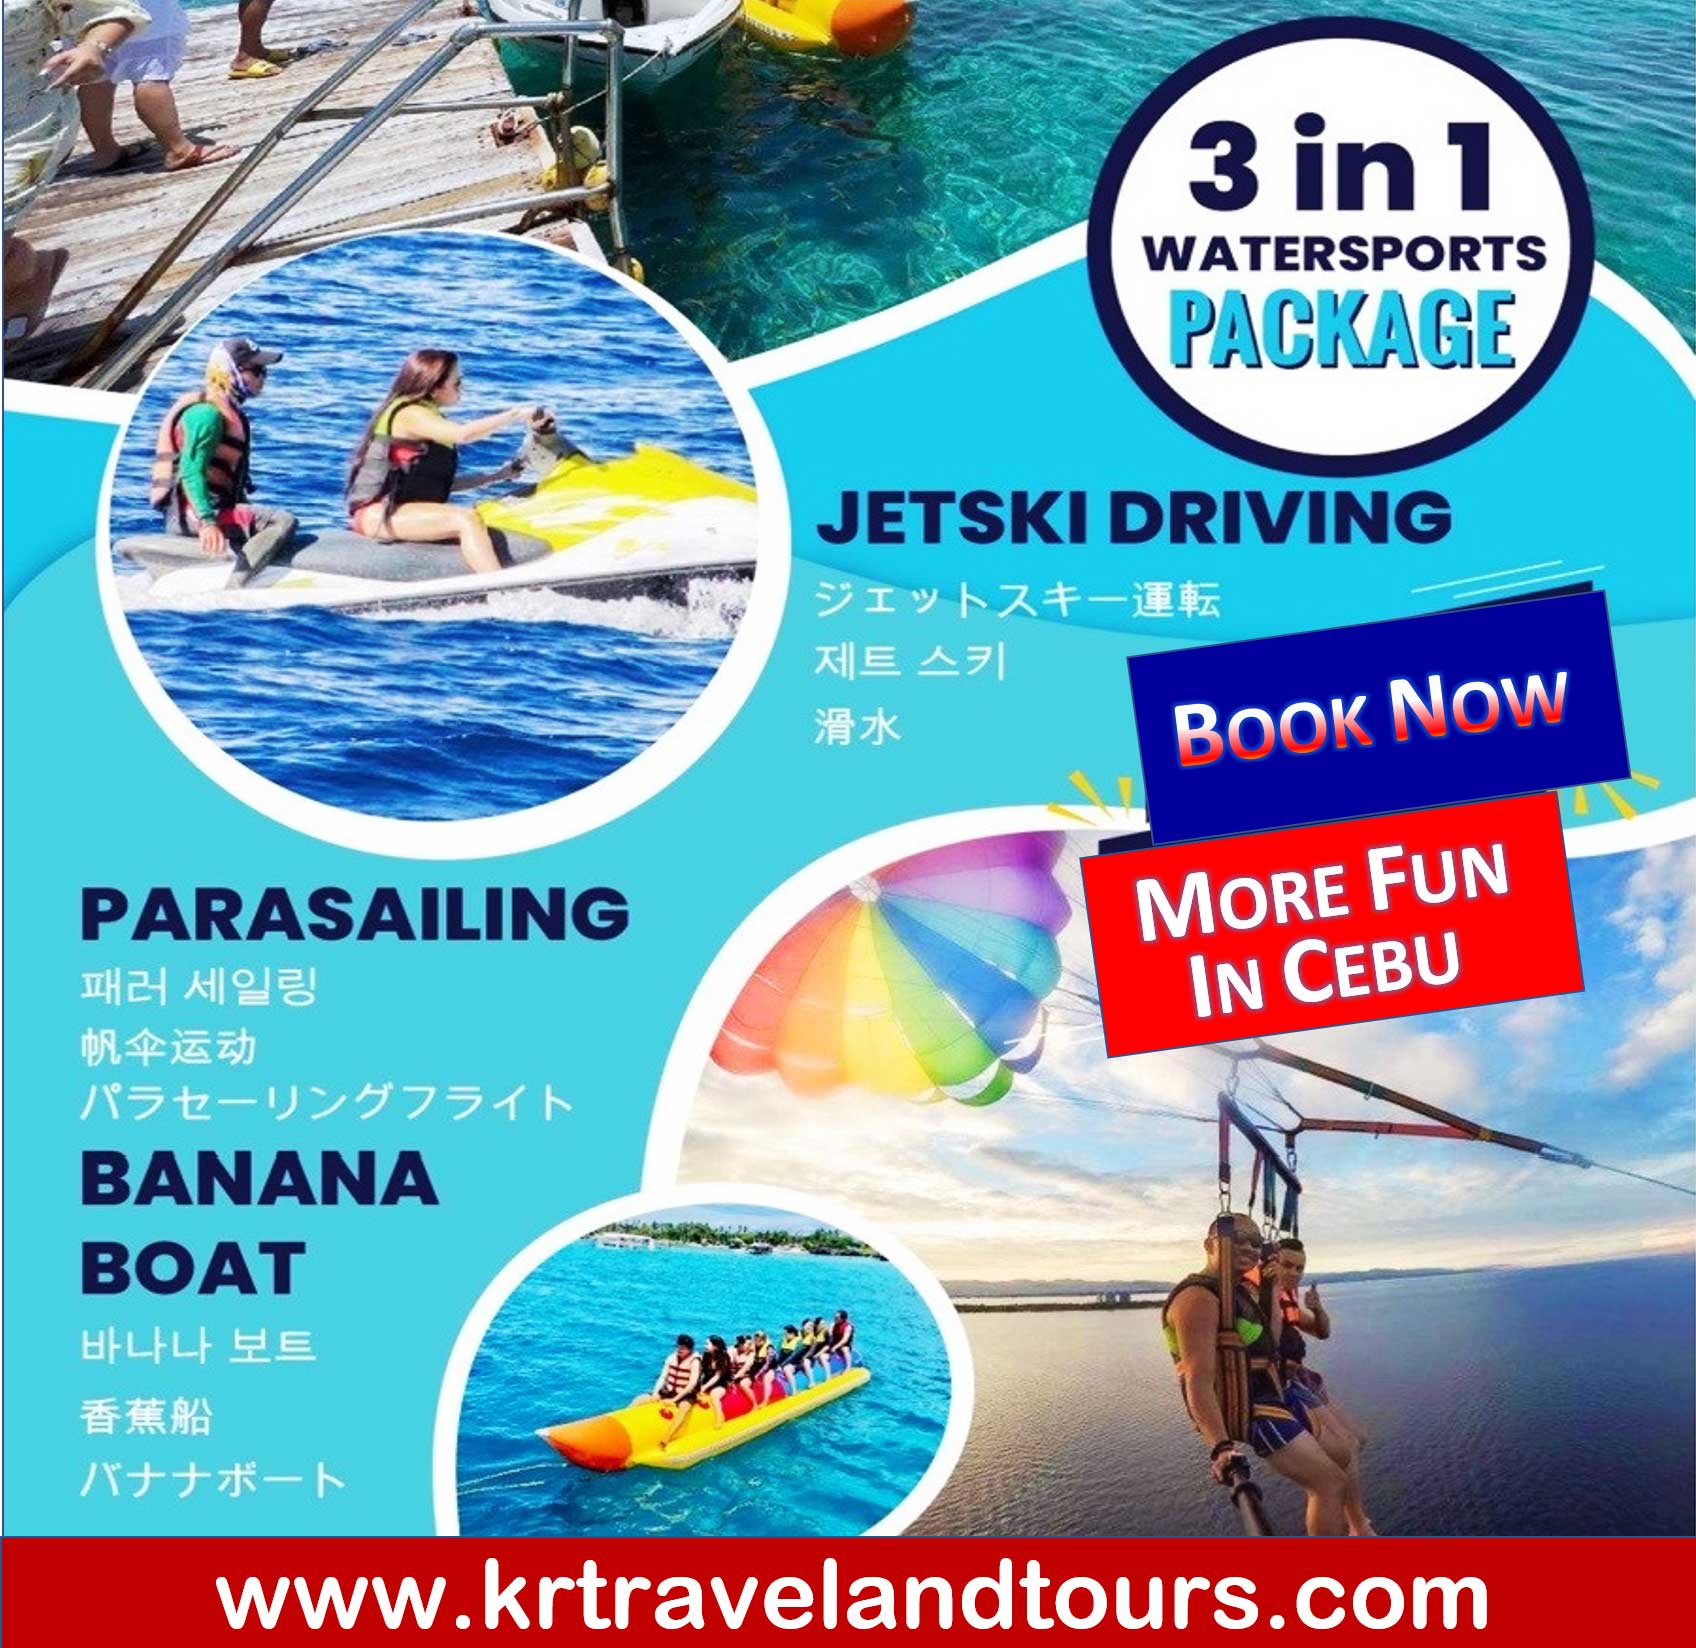 Sanctuary Snorkeling + 3 in 1 Water Sports + Mactan | Lapu-Lapu City Tour